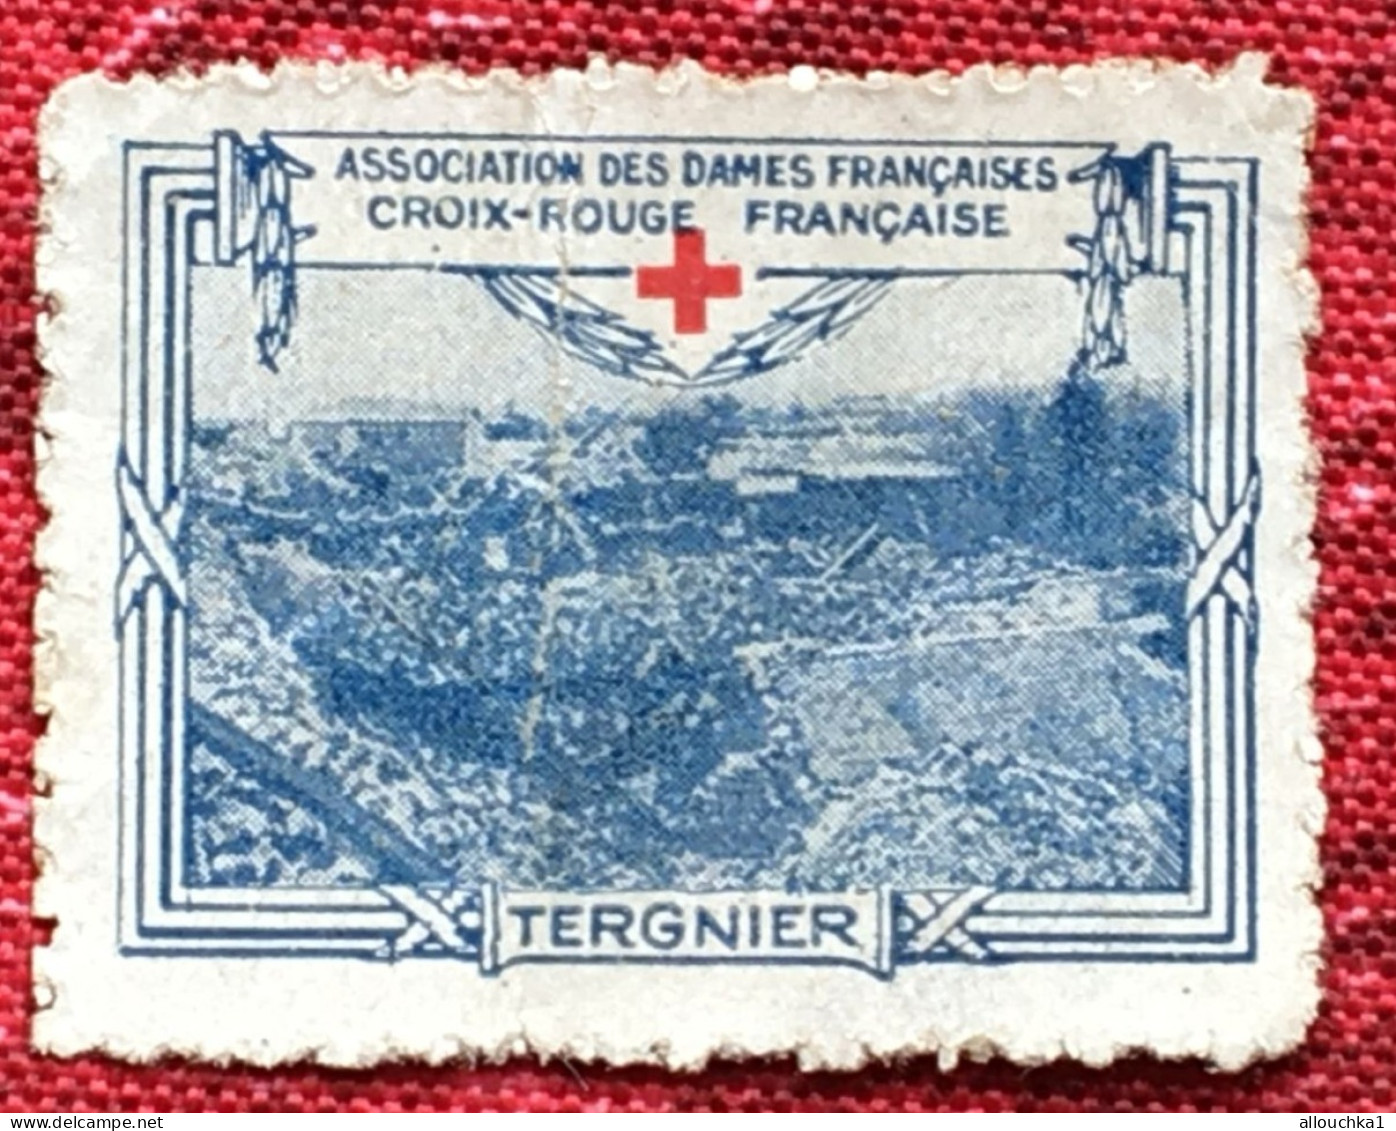 Croix Rouge Française Association Dames Françaises Tergnier -Red Cross-Timbre-Vignette-Erinnophilie-Stamp-Sticker-Viñeta - Cruz Roja